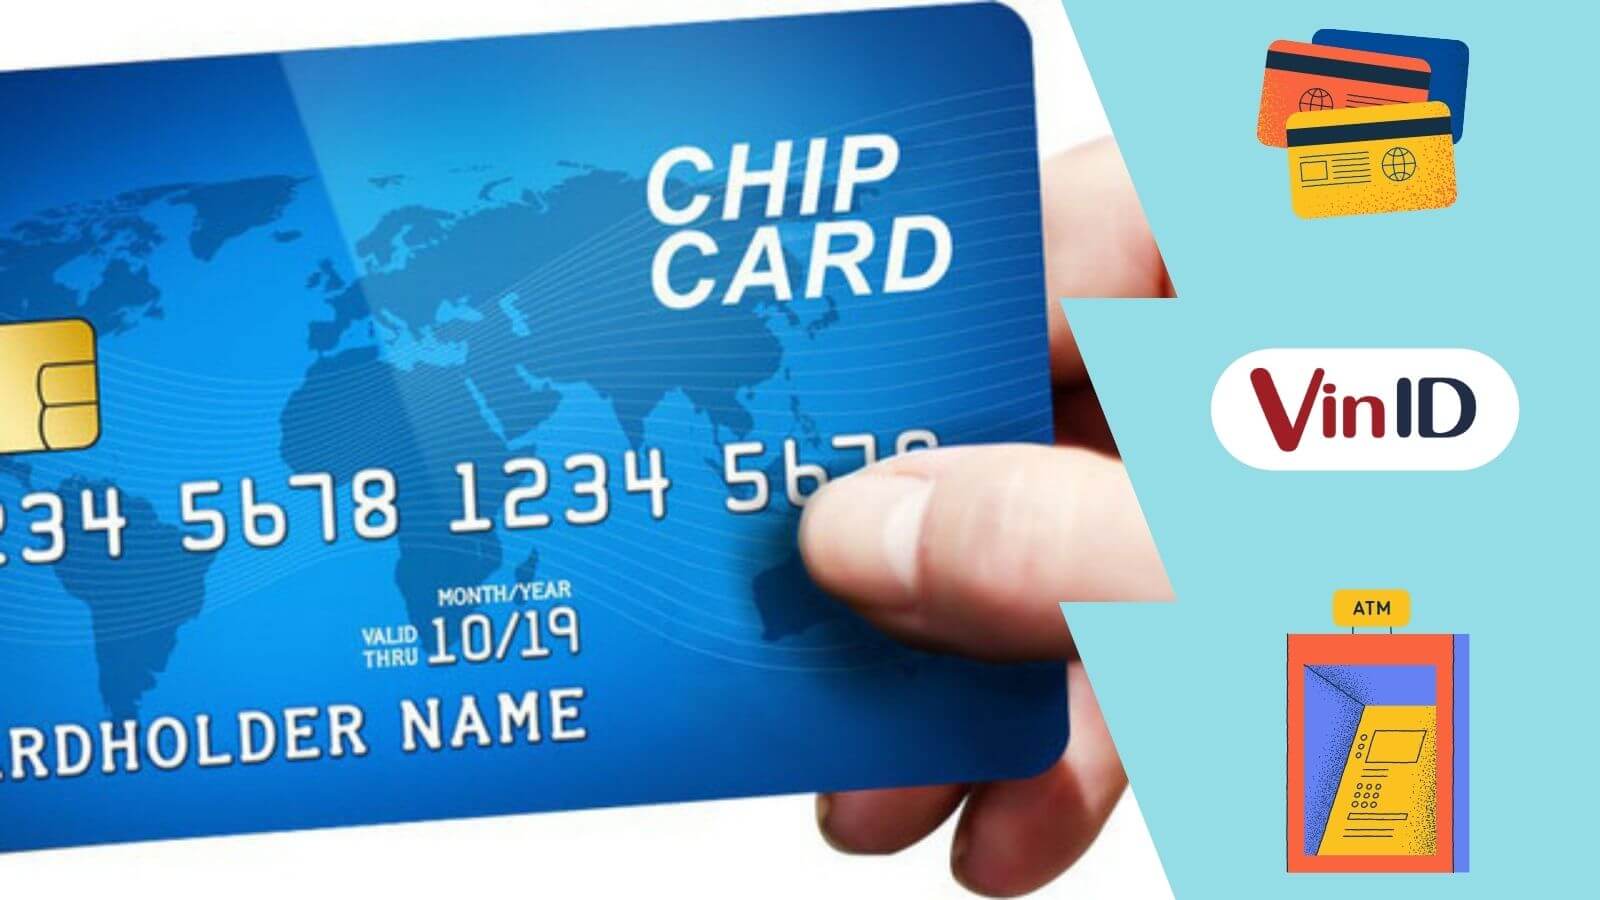 Thẻ ATM gắn chip có thể sử dụng để thanh toán mua hàng không? 
